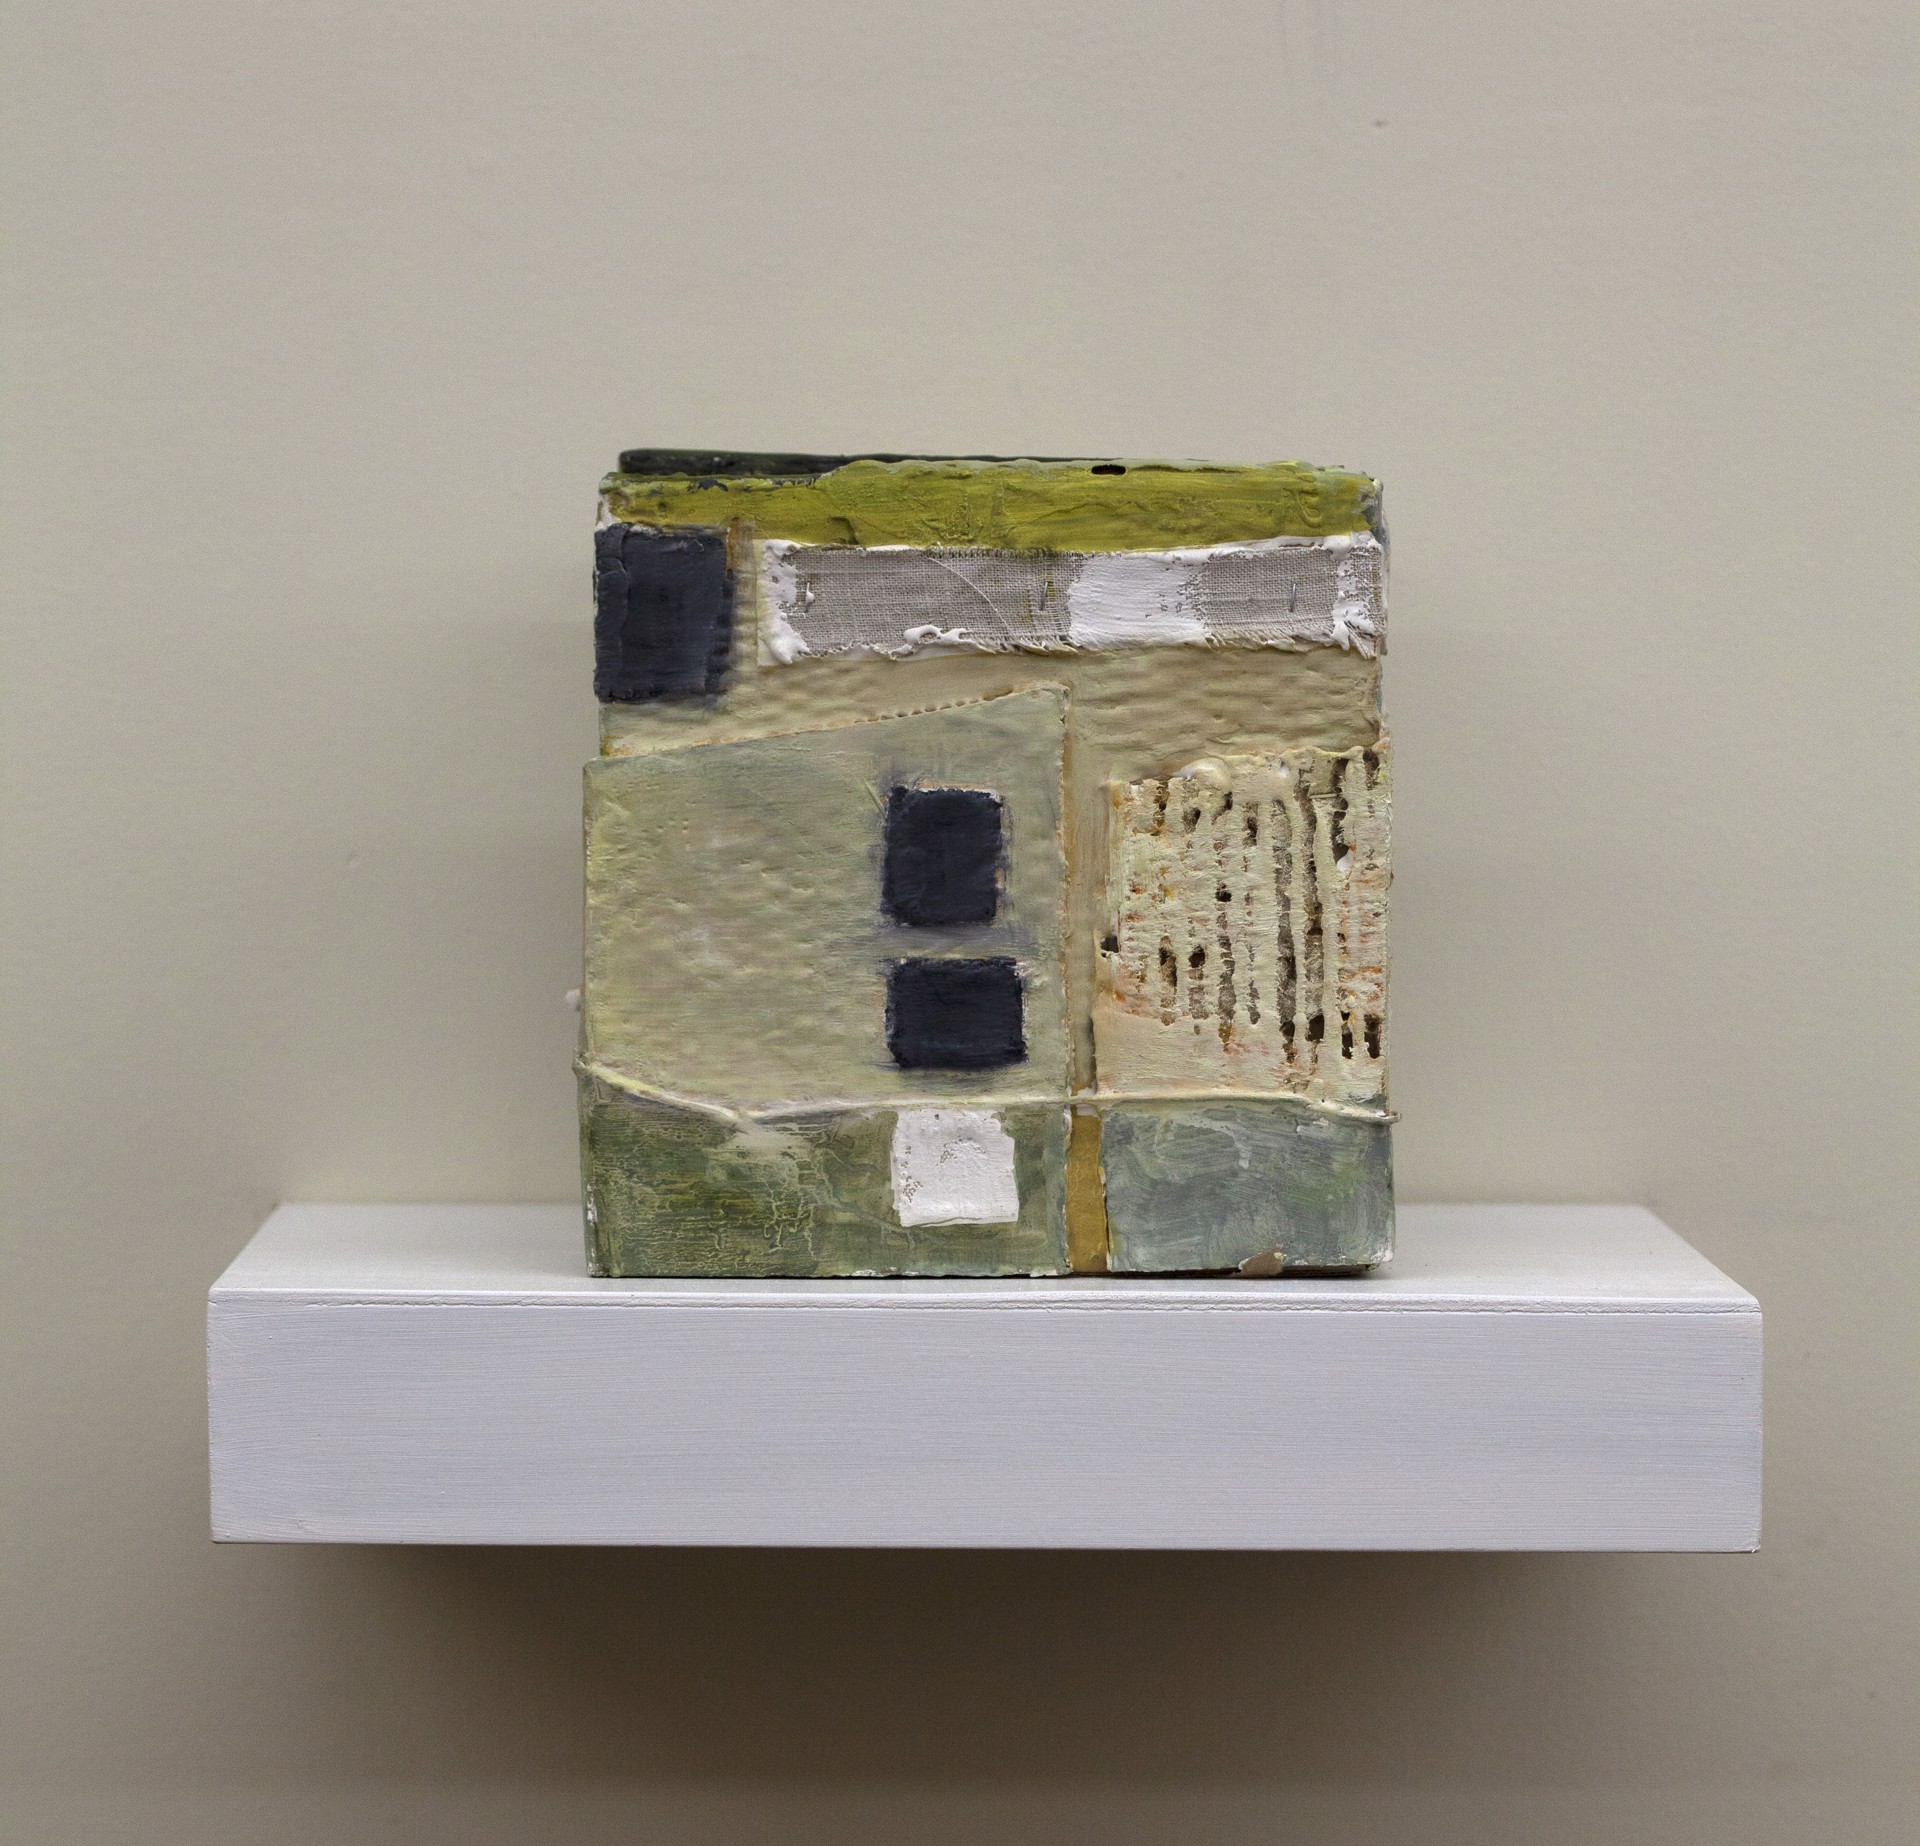 Box 5 by John McCaw